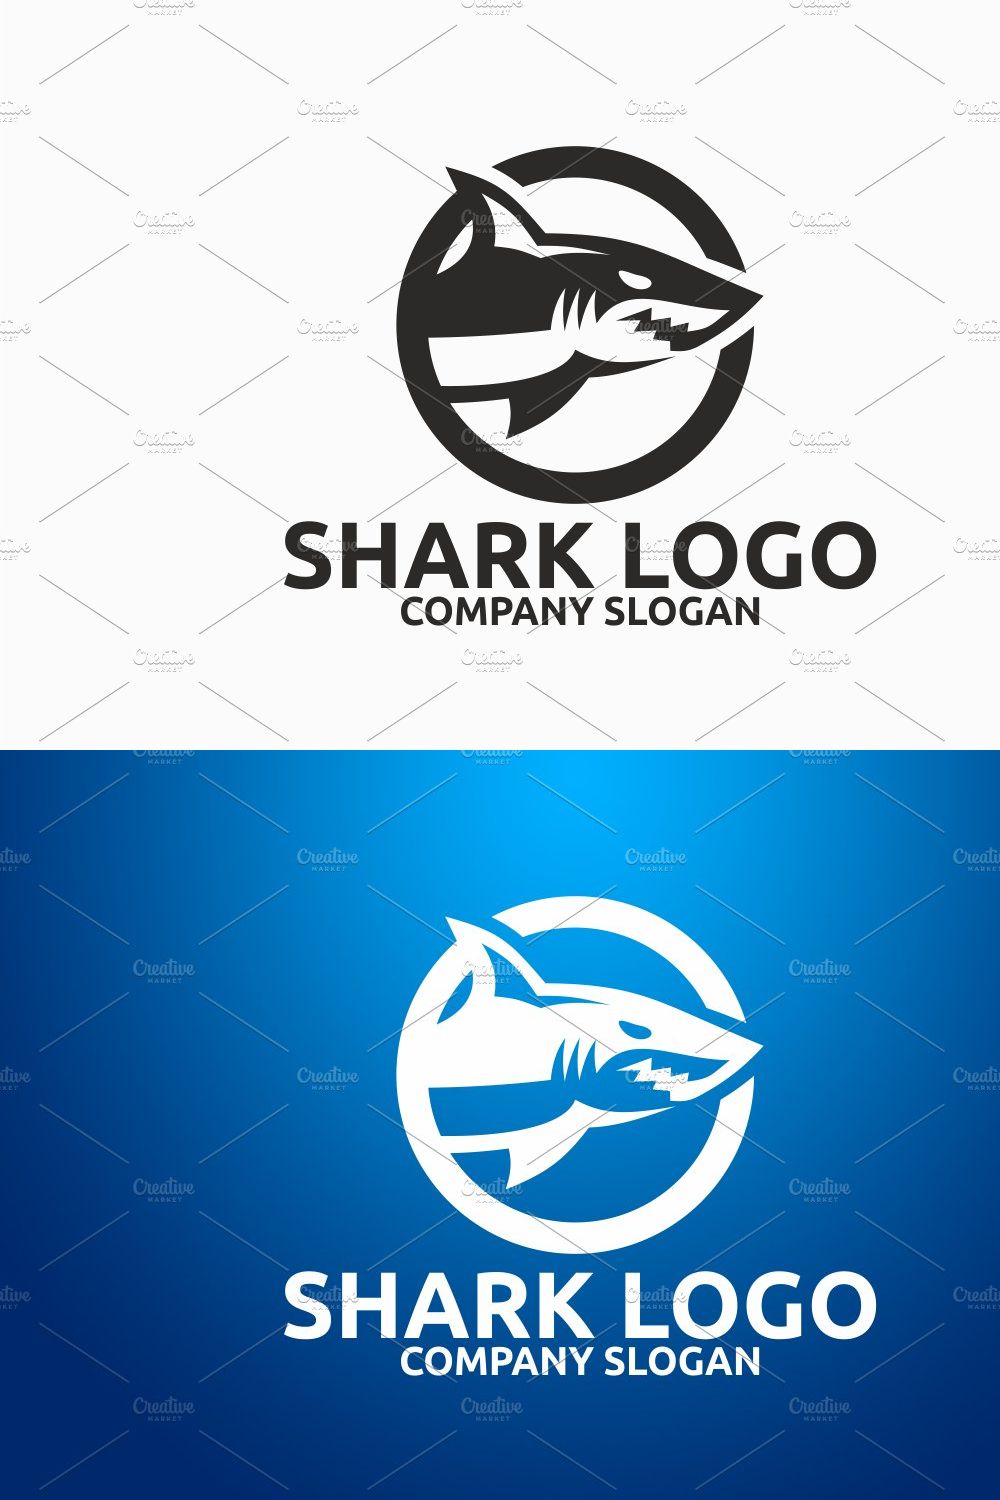 Shark Logo pinterest preview image.